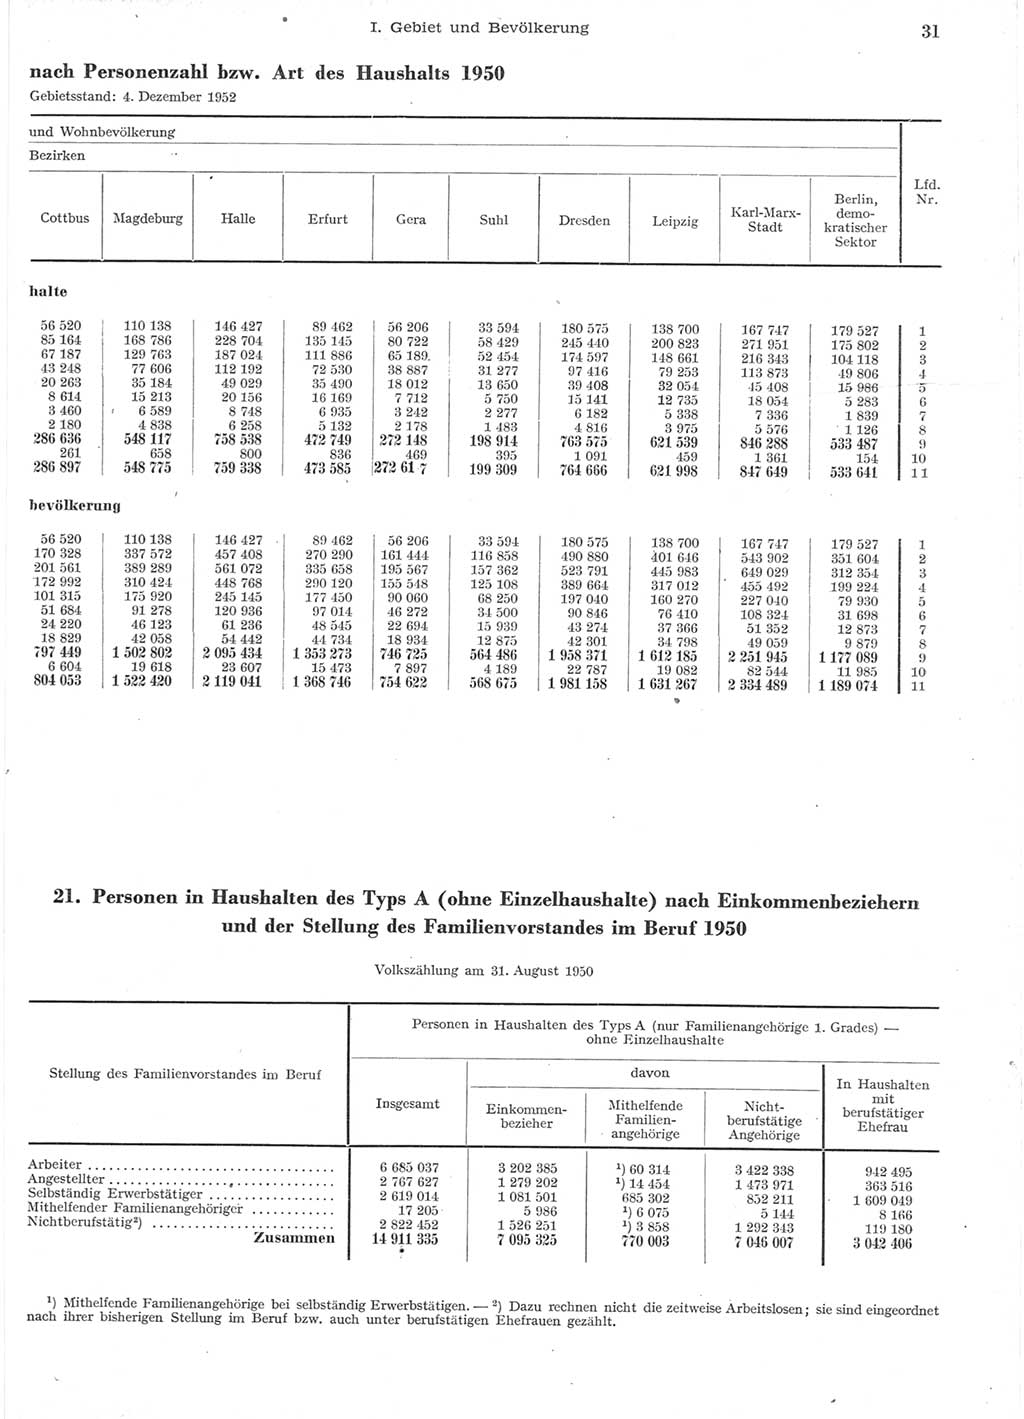 Statistisches Jahrbuch der Deutschen Demokratischen Republik (DDR) 1957, Seite 31 (Stat. Jb. DDR 1957, S. 31)